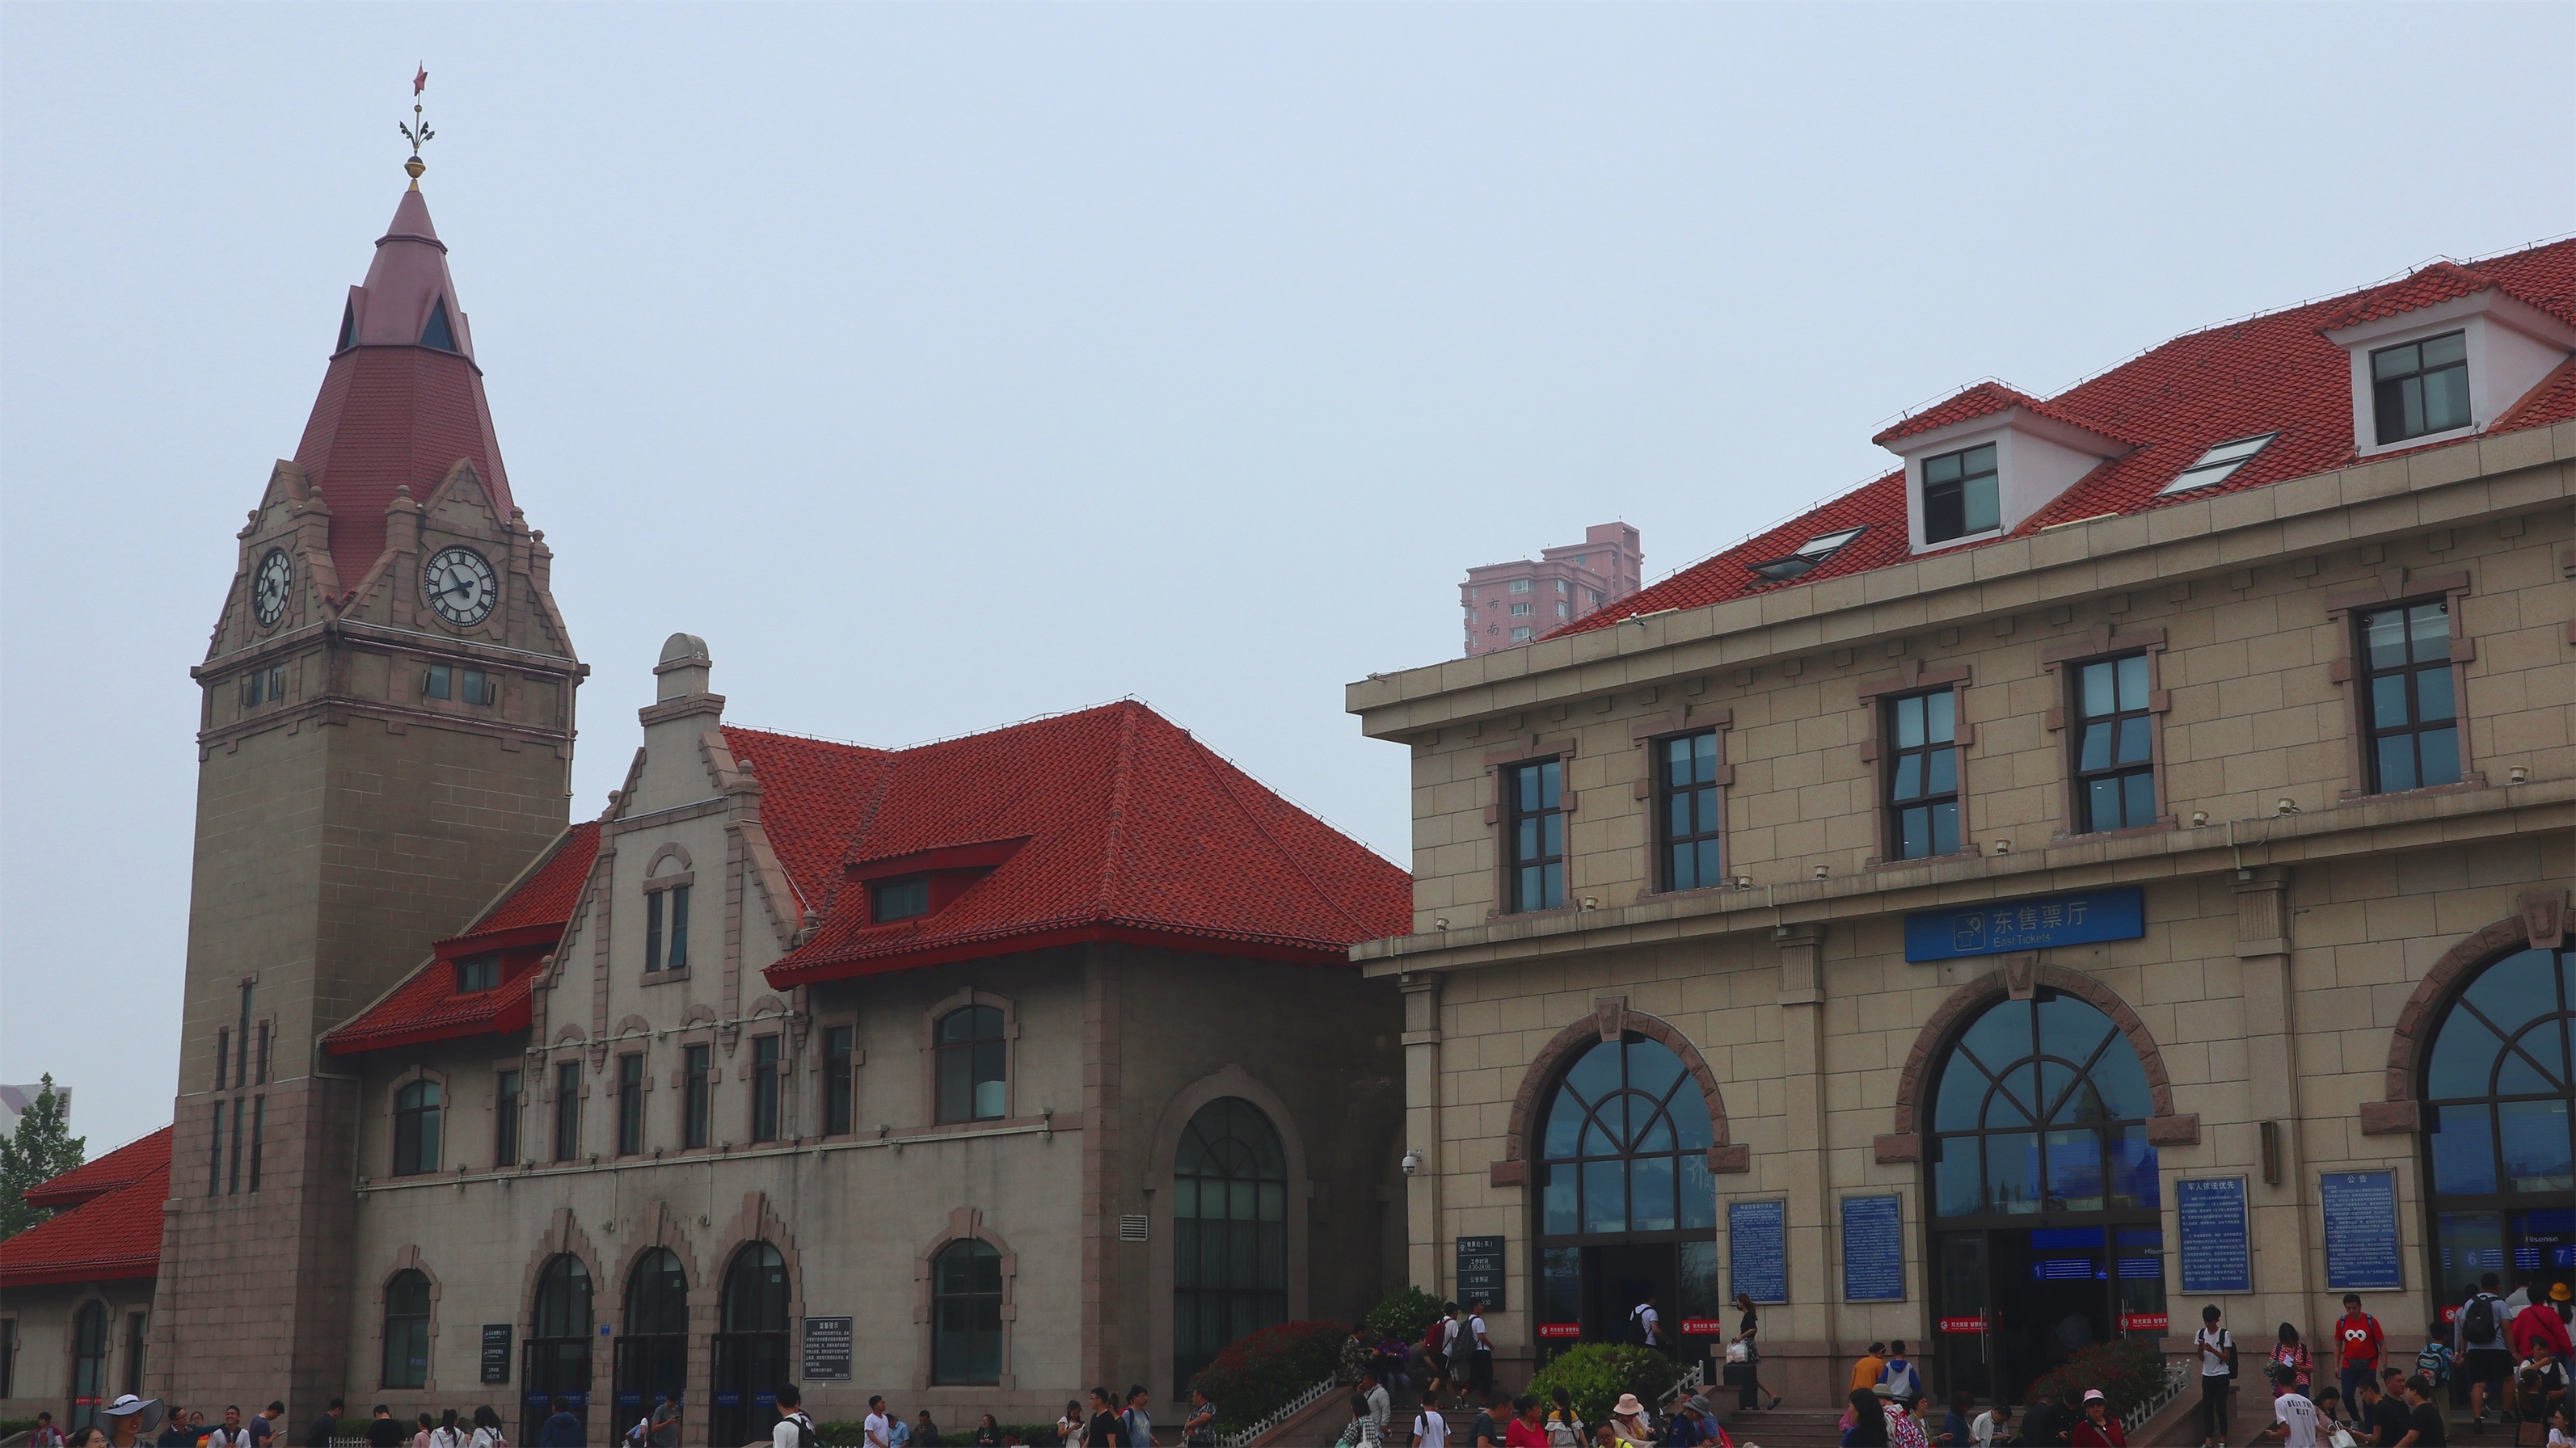 火车站站台背景摄影图高清摄影大图-千库网